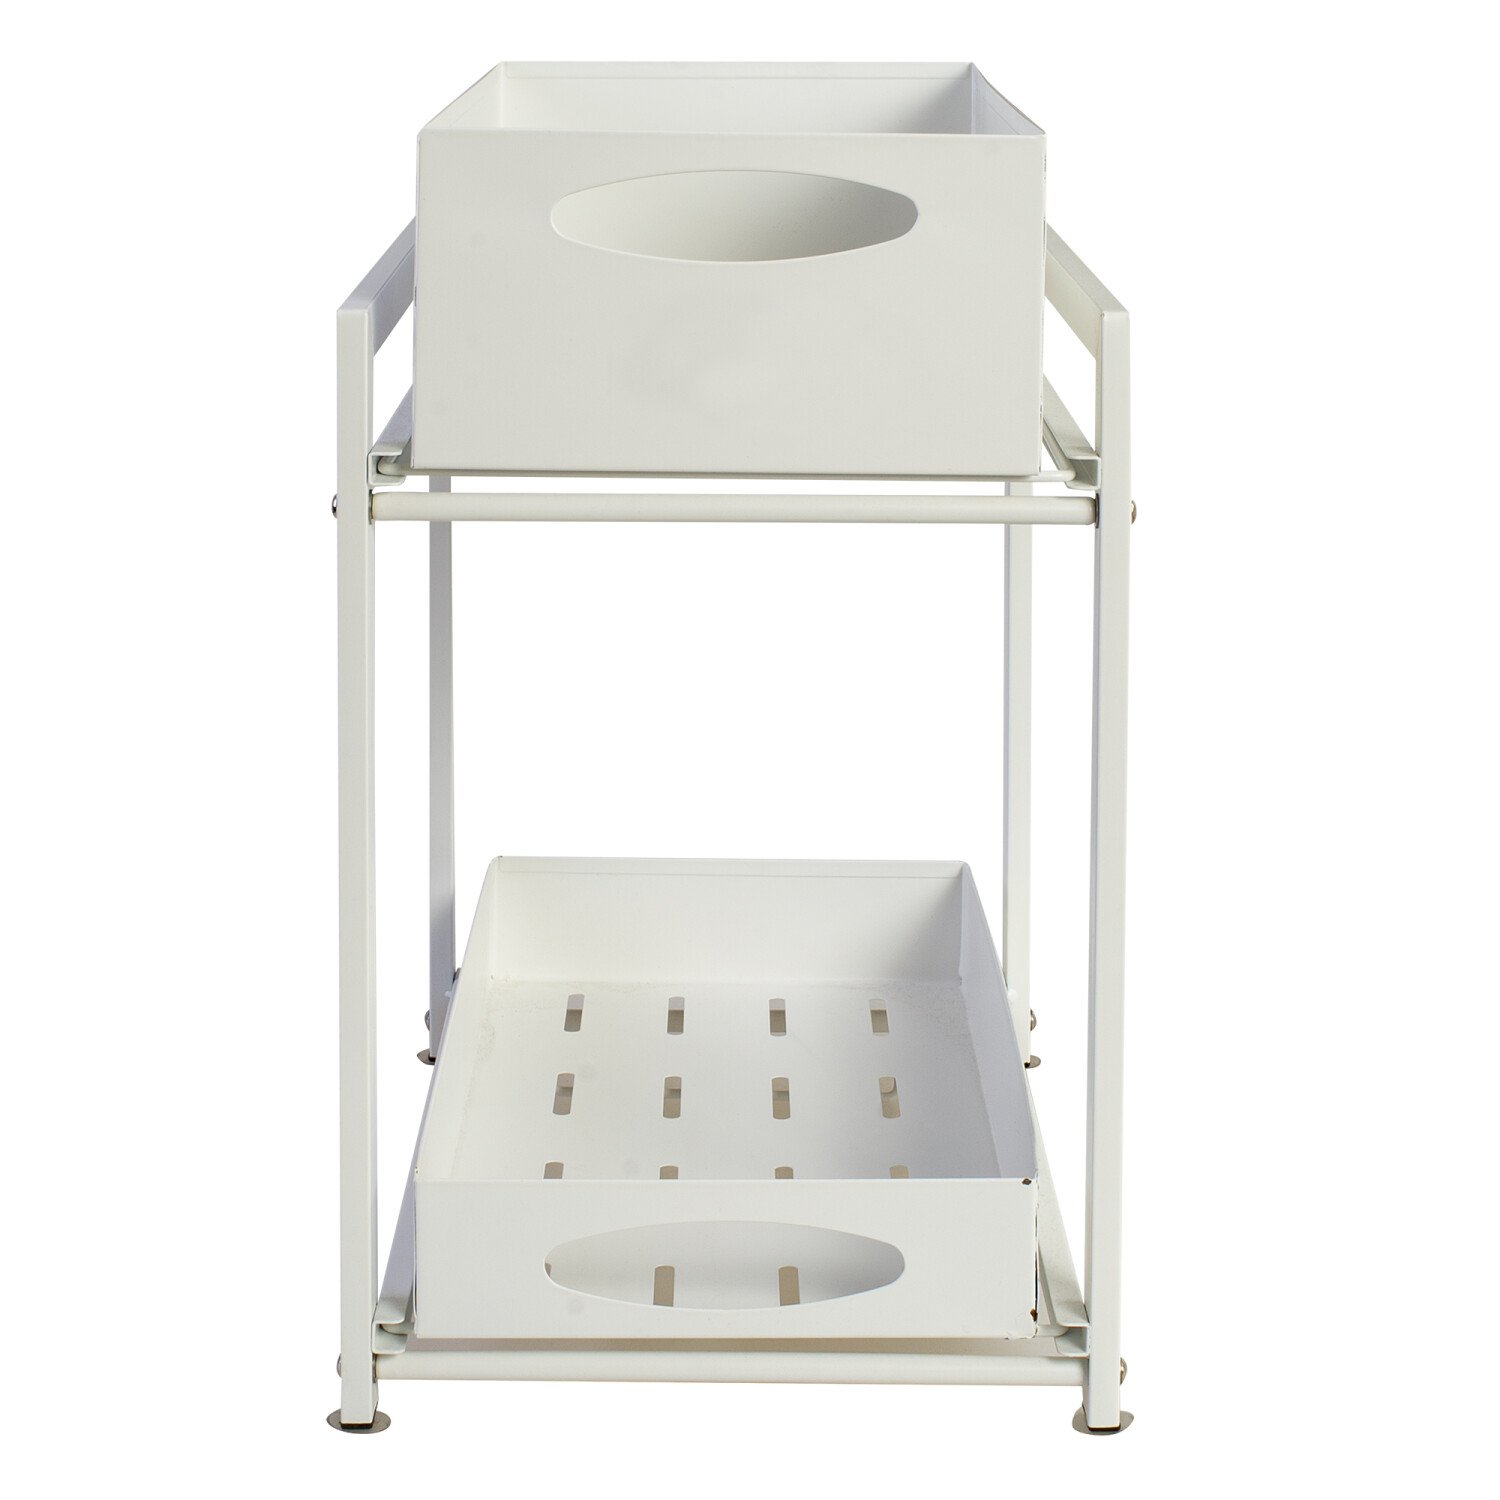 Organizador cesta de cocina y baño 2 niveles blanco — Importadora USA